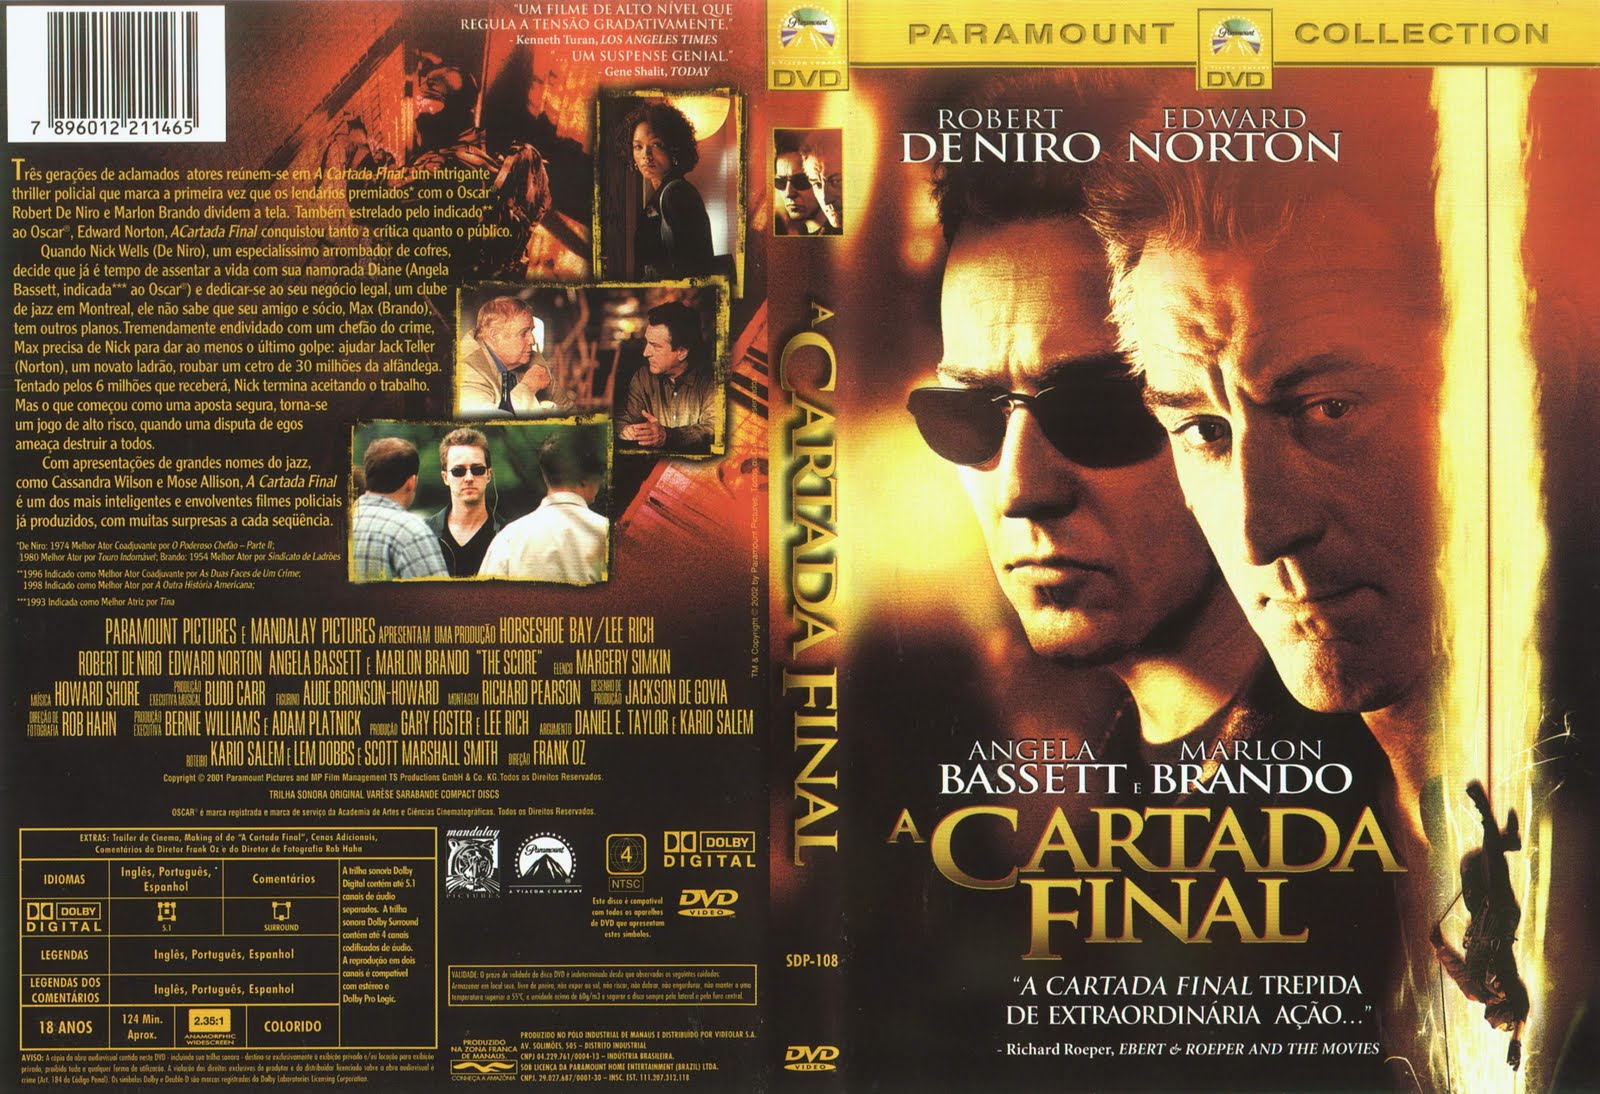 Leonardo DiCaprio : cameron diaz look a like1600 x 1094